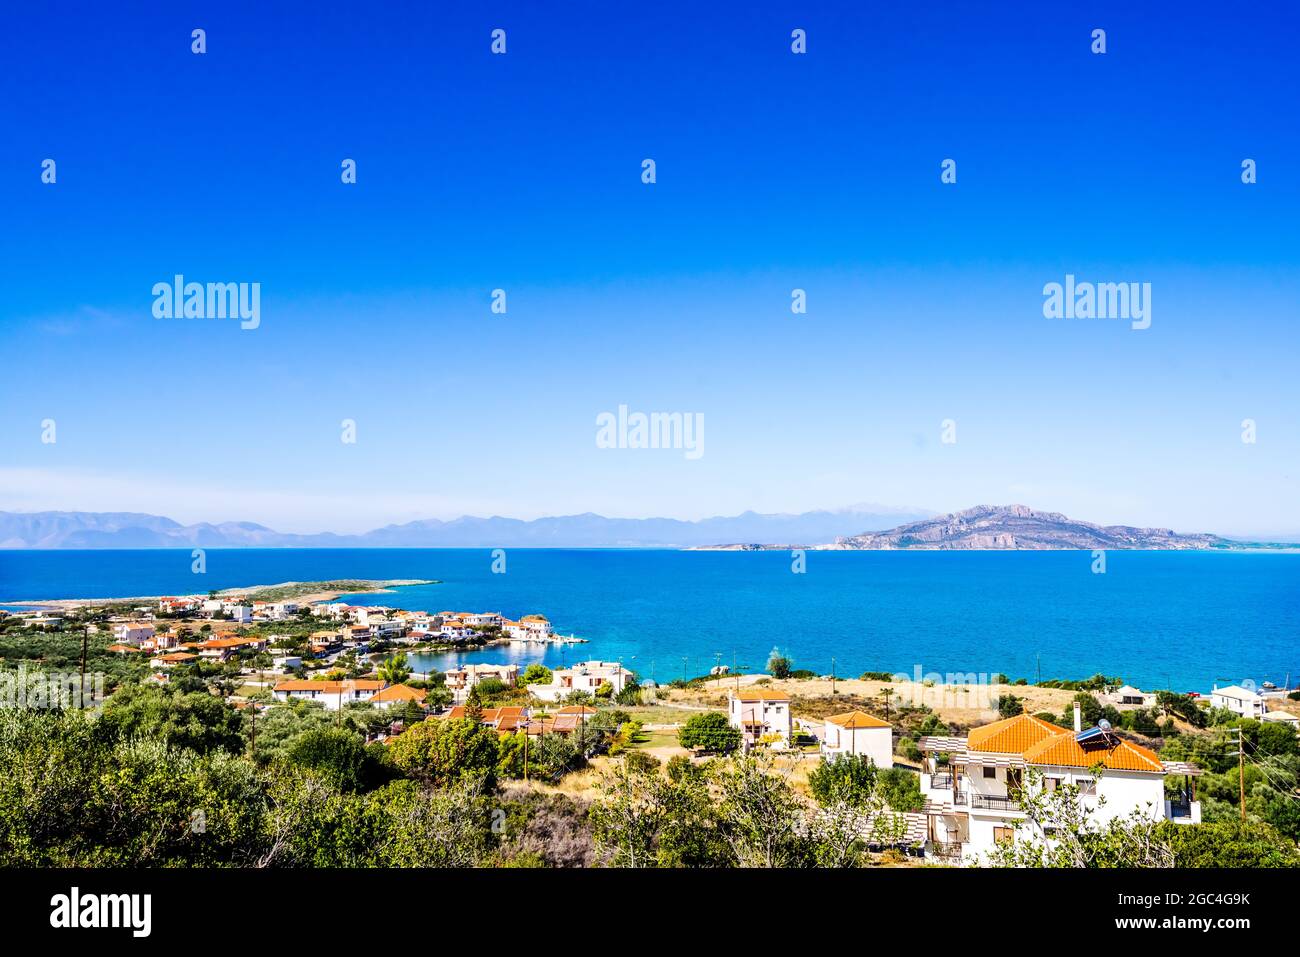 Das Küstendorf Archangelos in Lakonien, Griechenland Stockfoto